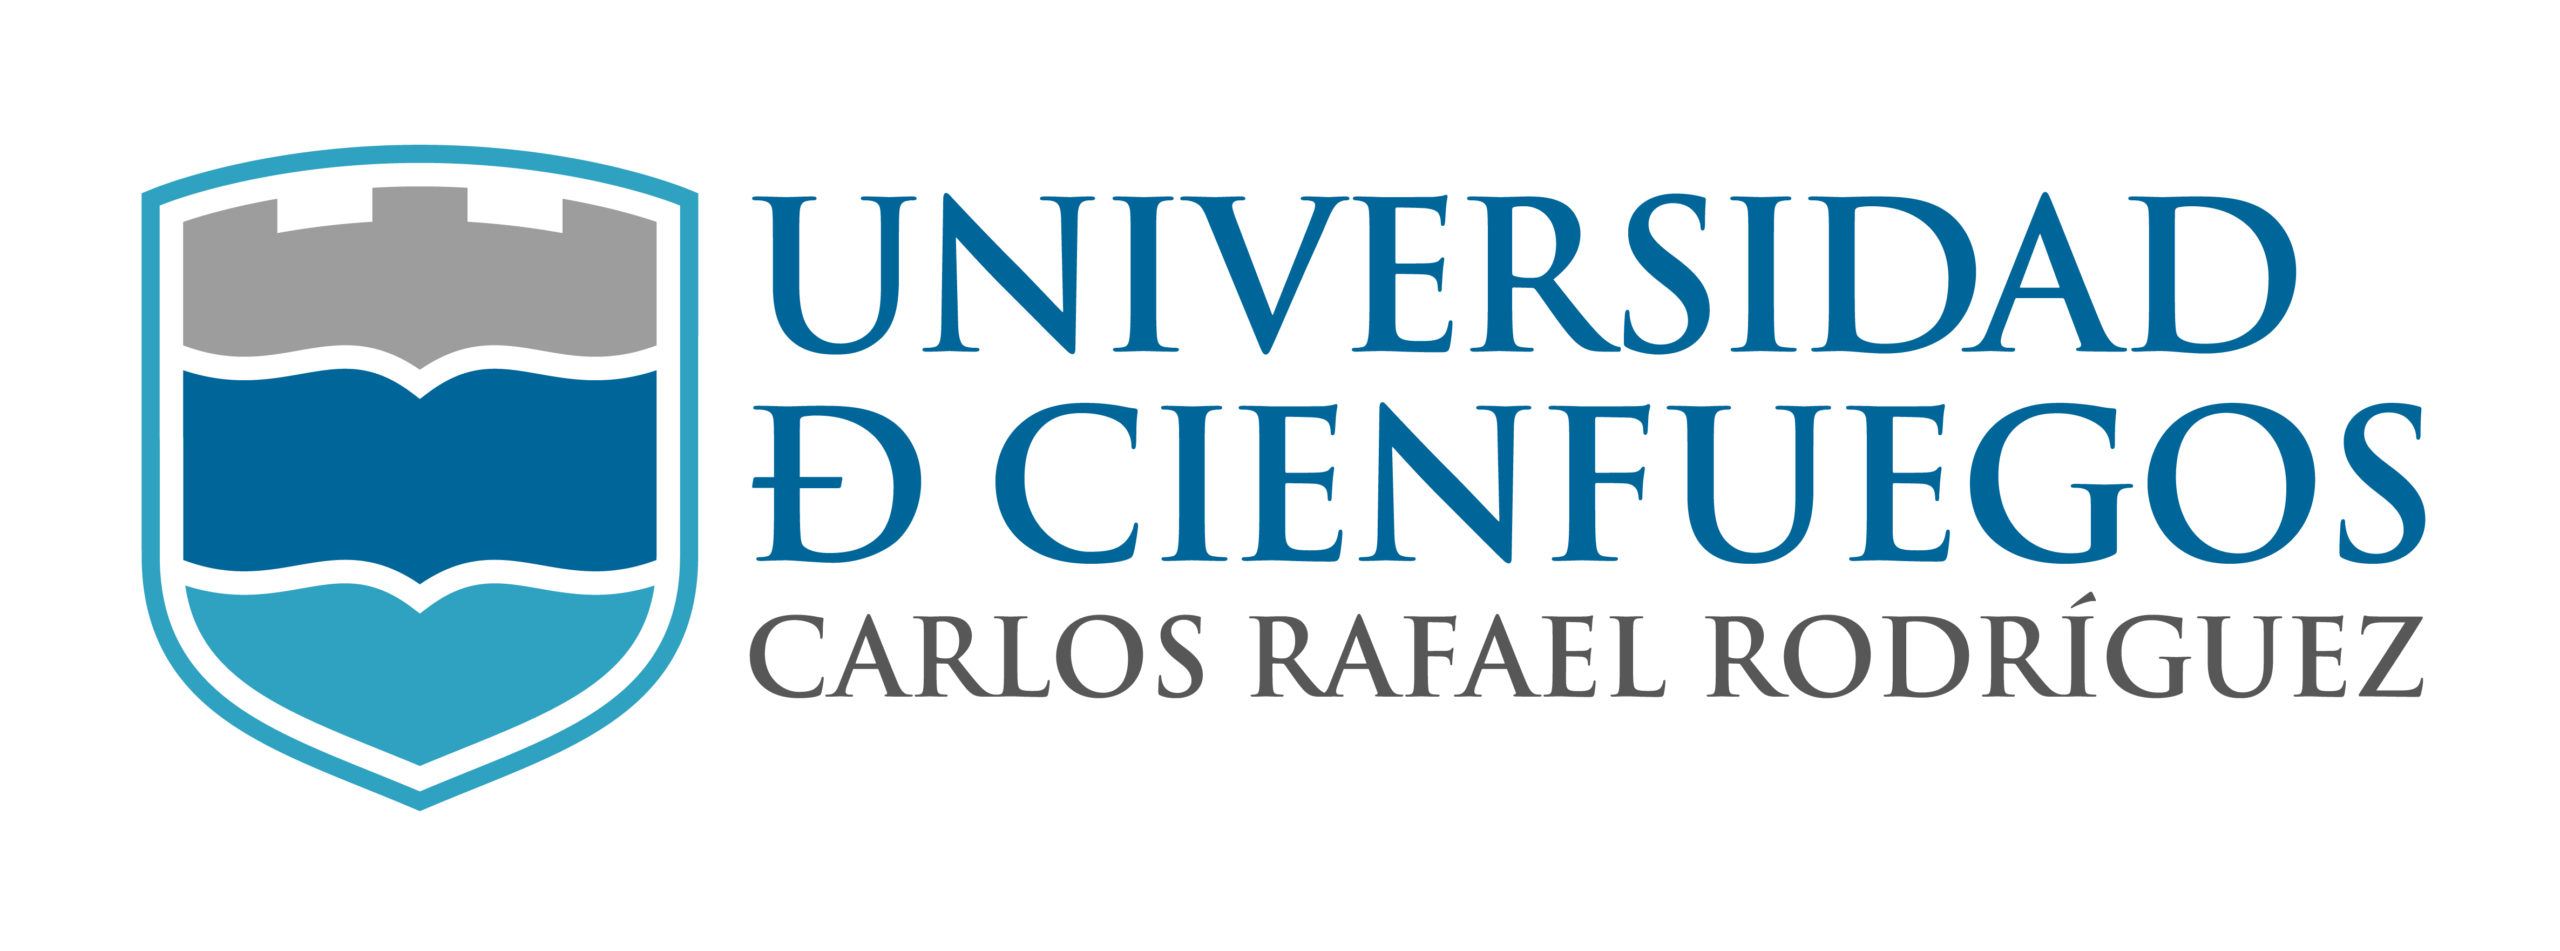 Universidad de Cienfuegos (UCF)